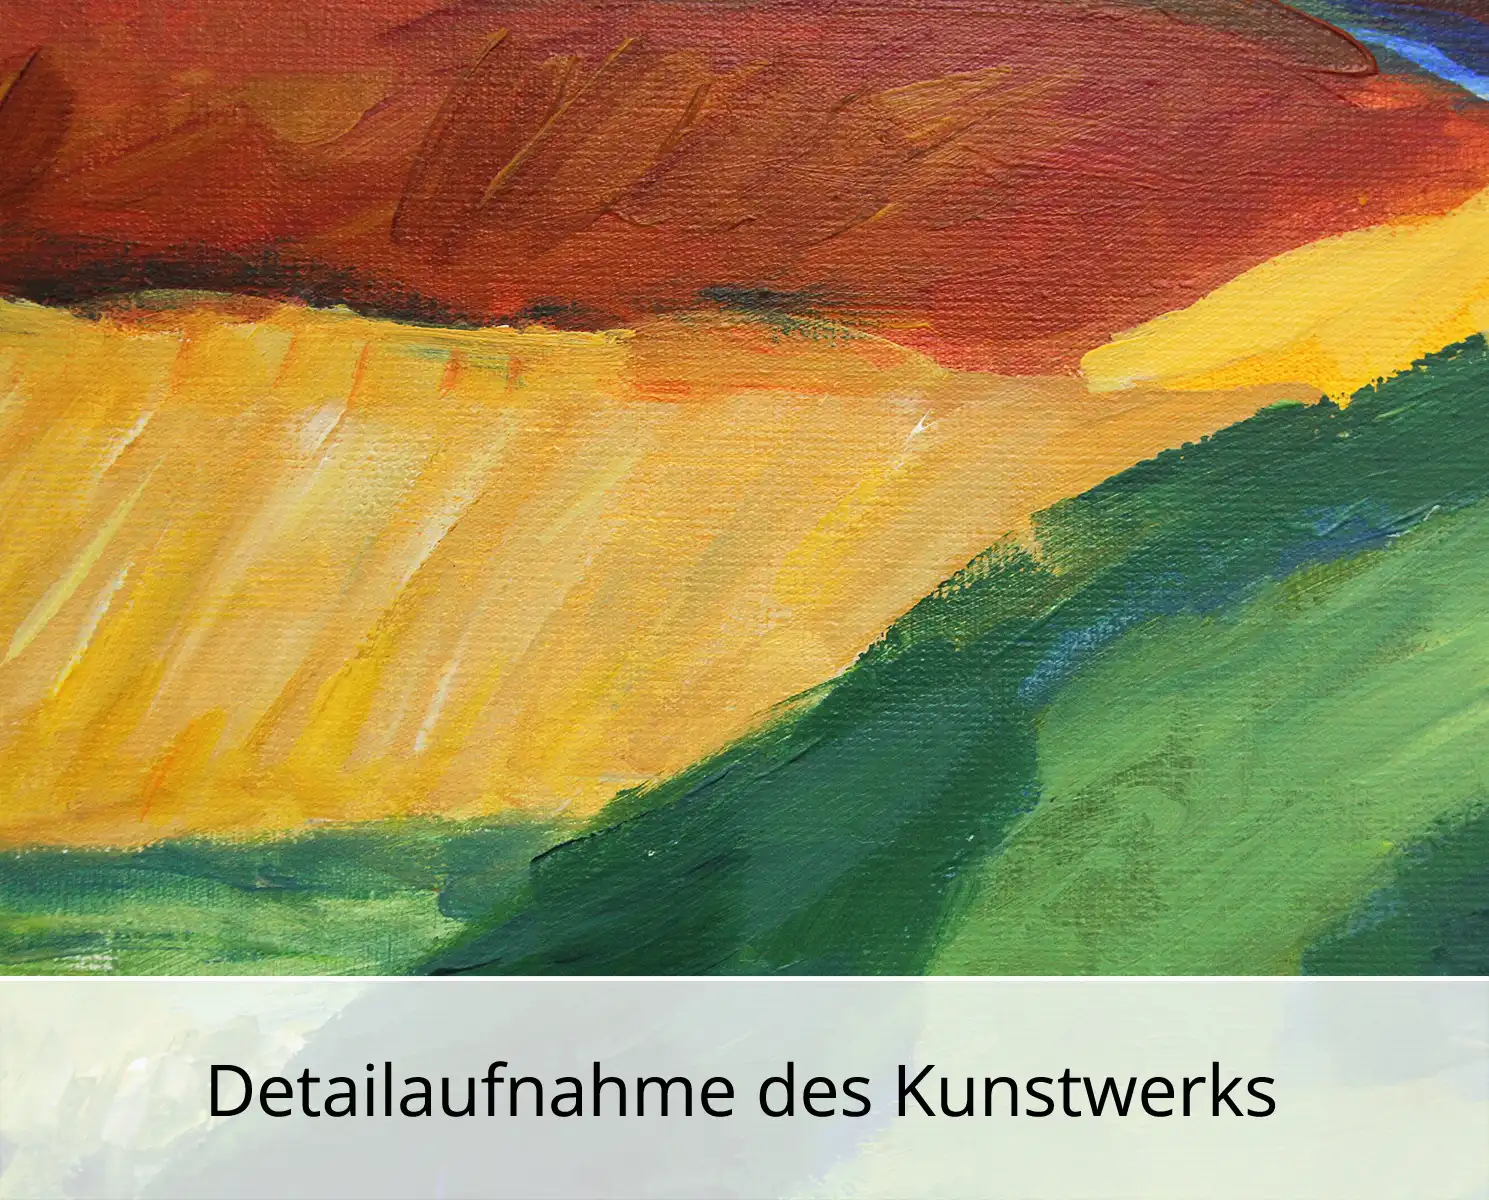 M. Cieśla: "Feldlandschaft", Original/Unikat, expressionistisches Gemälde